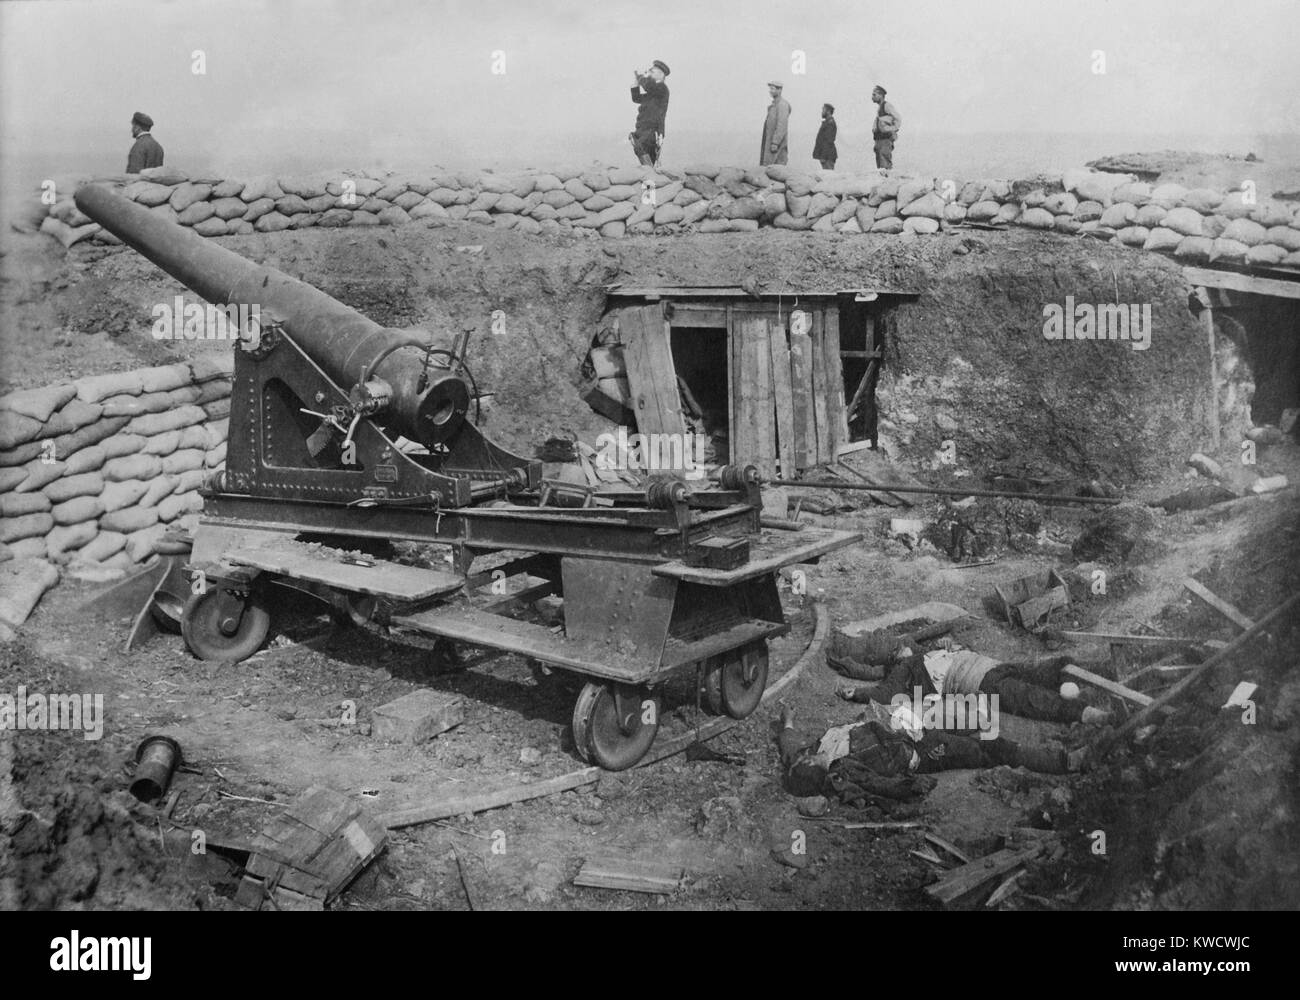 Belagerung von Osmanischen Adrianopel (Edirne) von Bulganian und serbischen Streitkräfte, Nov. 3, 1912 - März 26, 1913. Erfasst der osmanischen Belagerung Batterie mit Toten türkische Soldaten (BSLOC 2017 1 142) Stockfoto